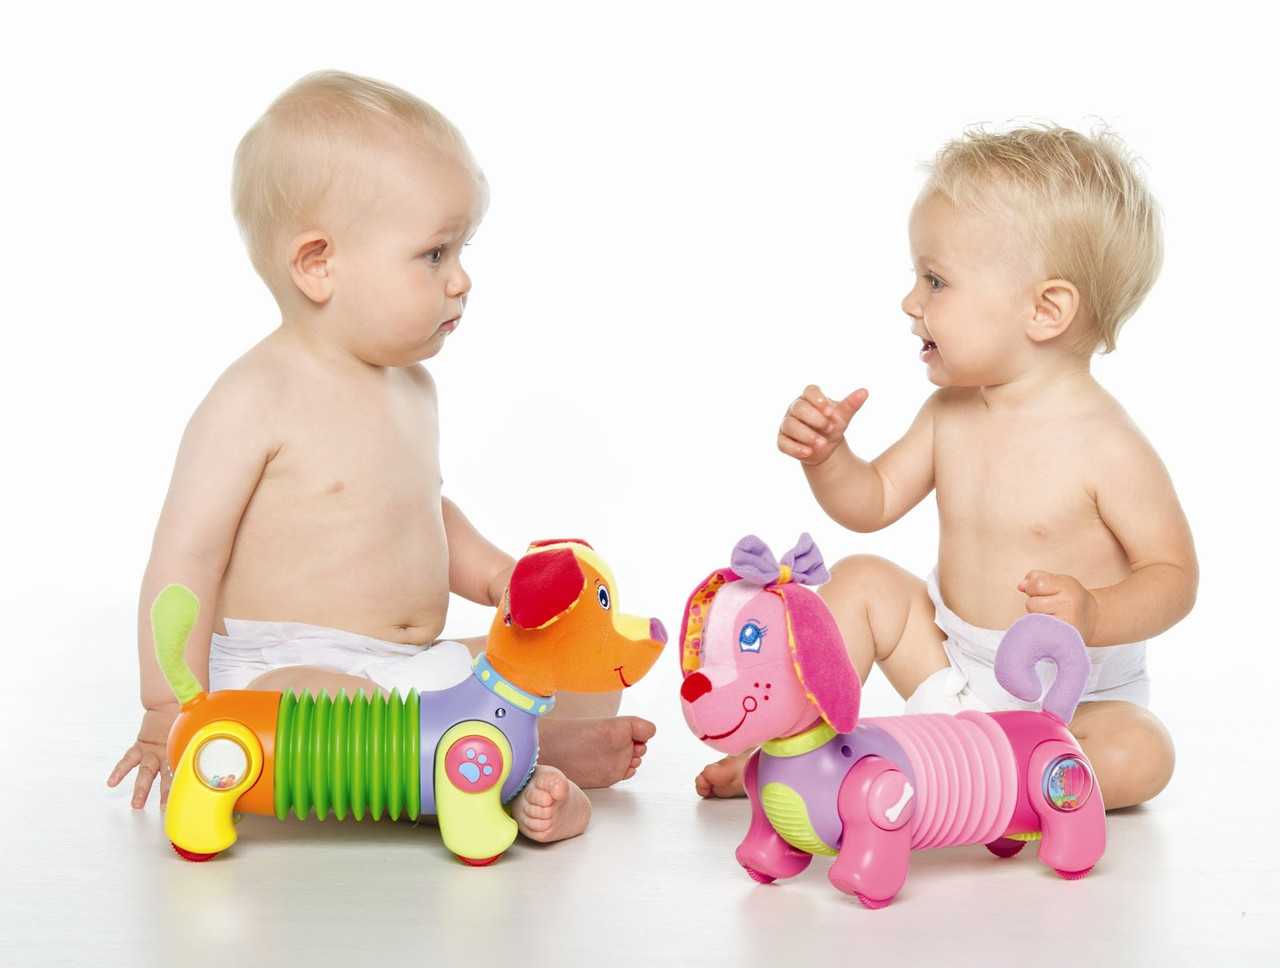 12 лучших развивающих игрушек для детей от 3 лет